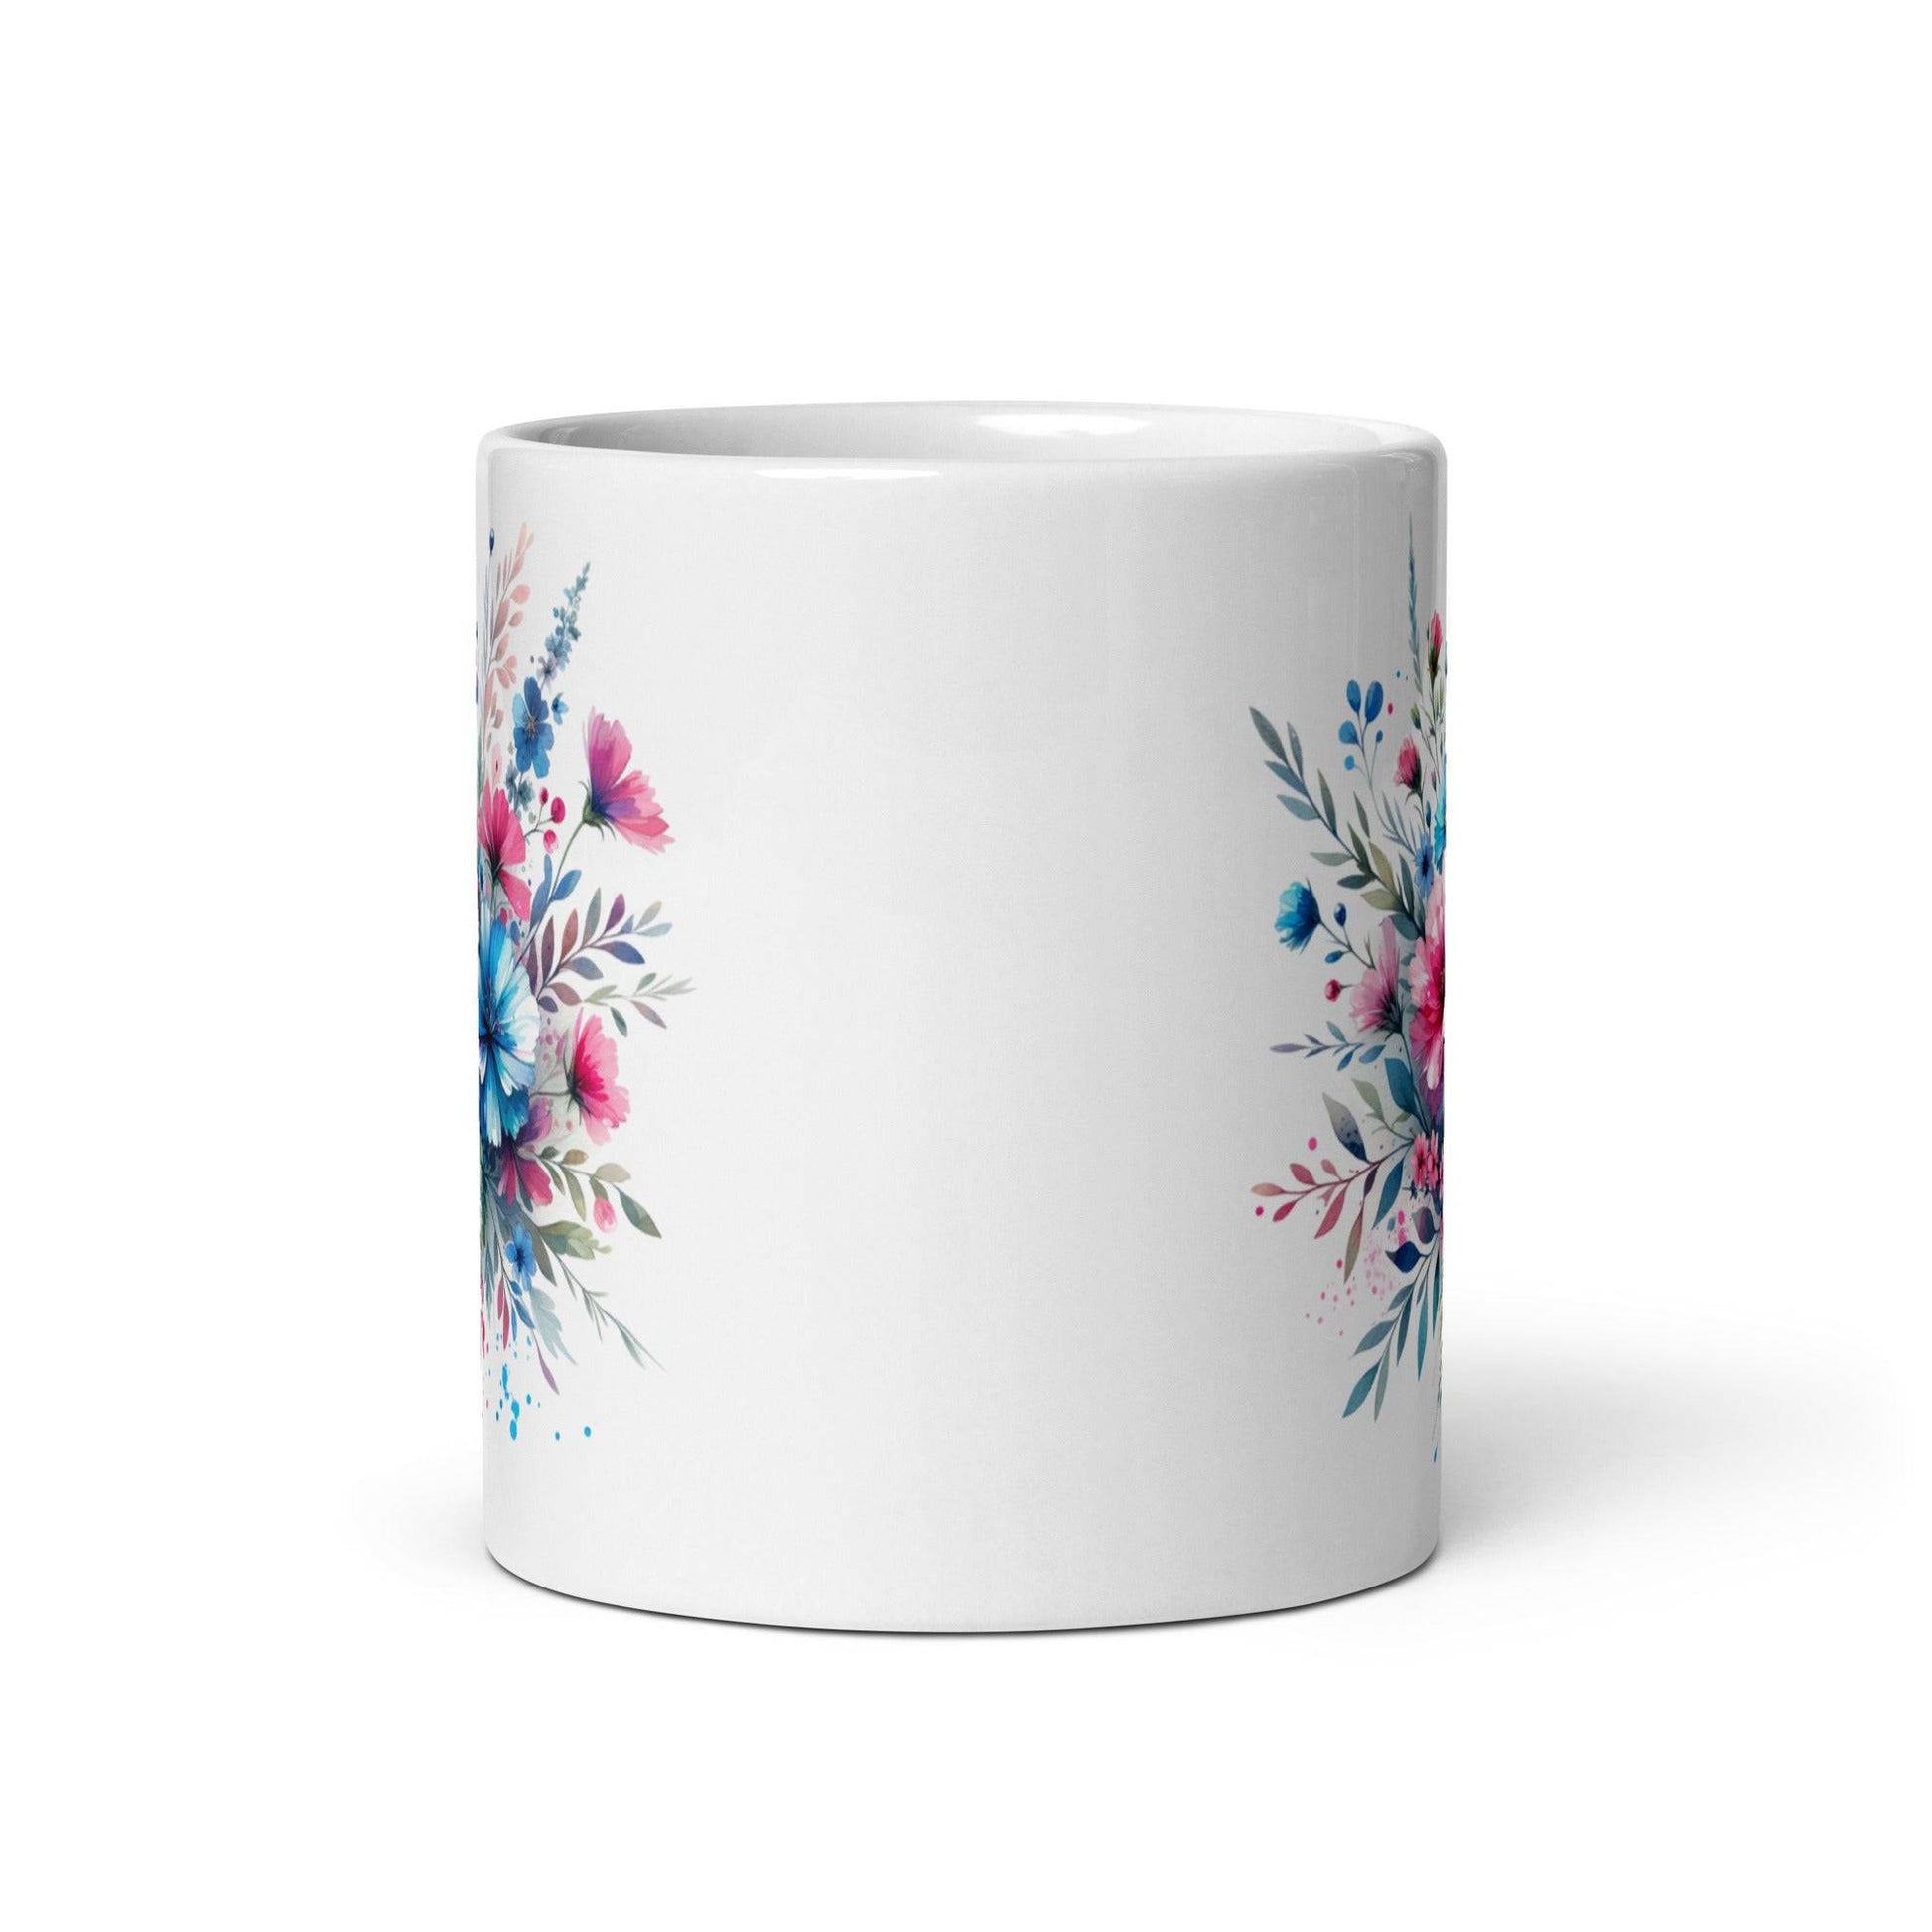 Exquisite Ceramic Mug Adorned with Vibrant Wildflowers - 